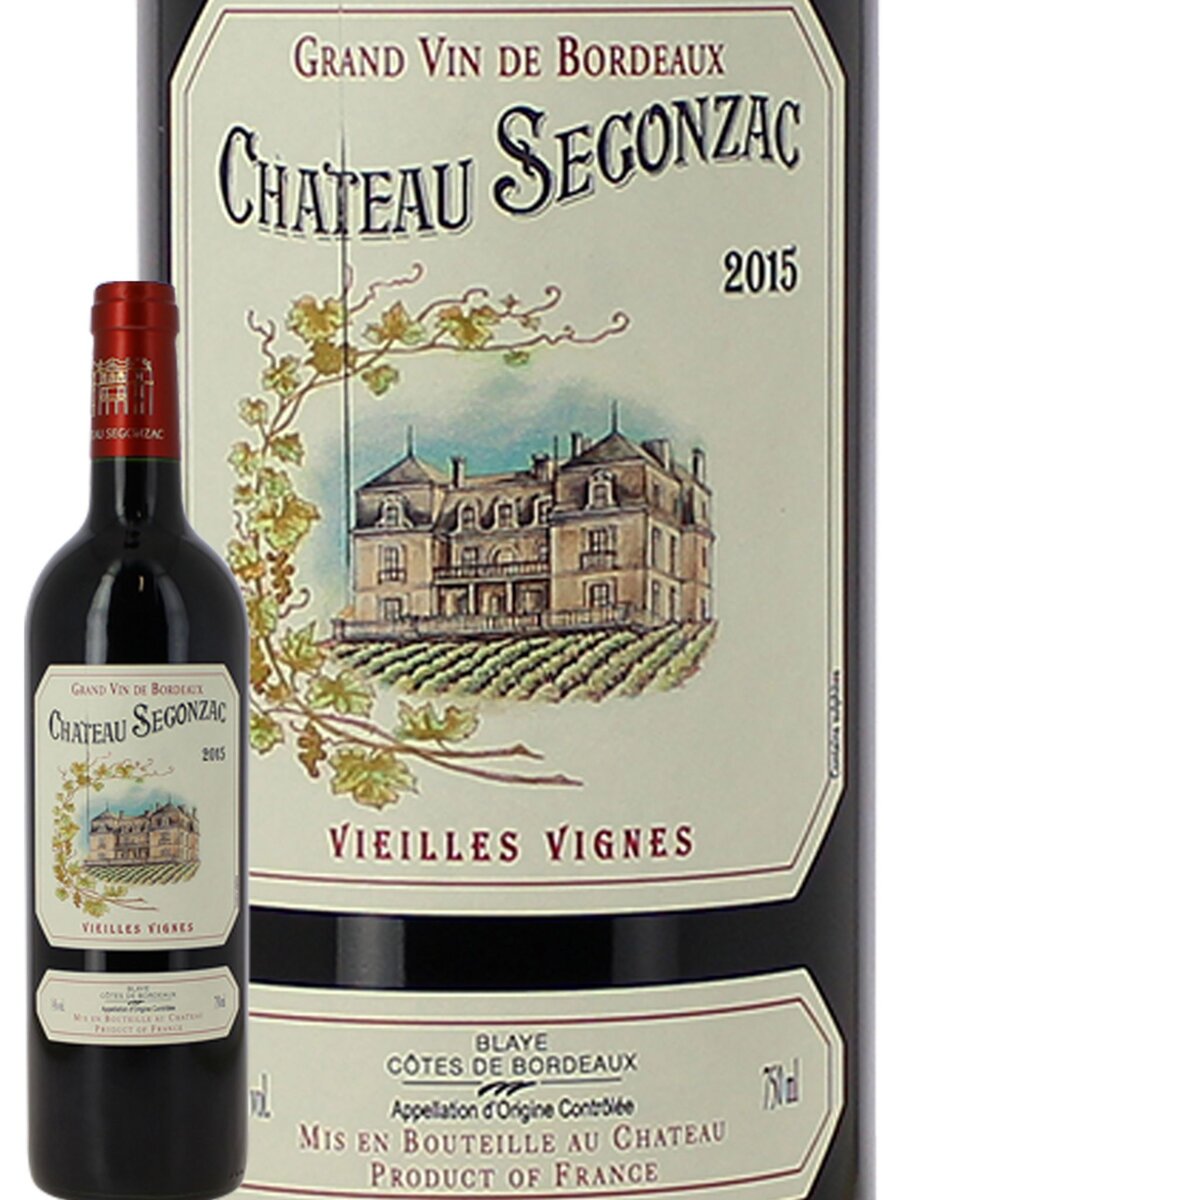 Château Segonzac Vieilles Vignes Blaye Côtes De Bordeaux Rouge 2015